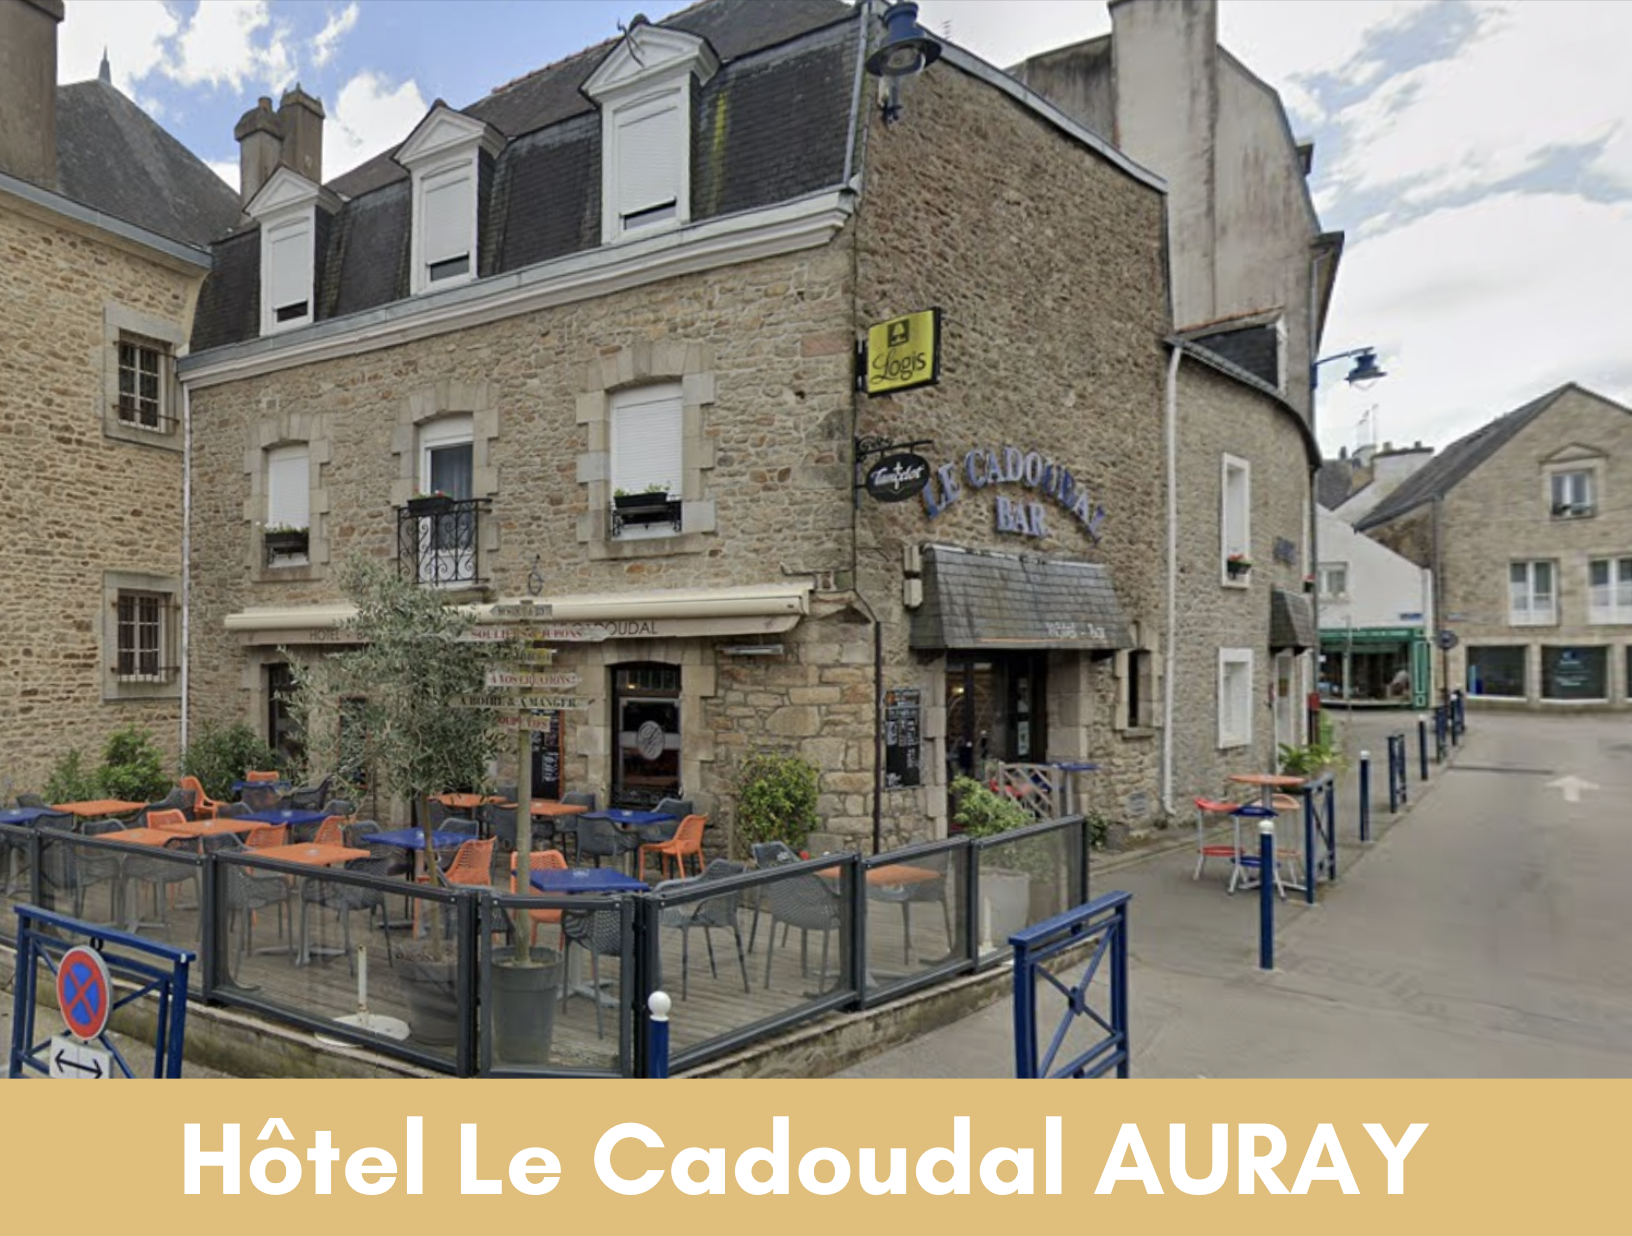 Hotel Le Cadoudal AURAY